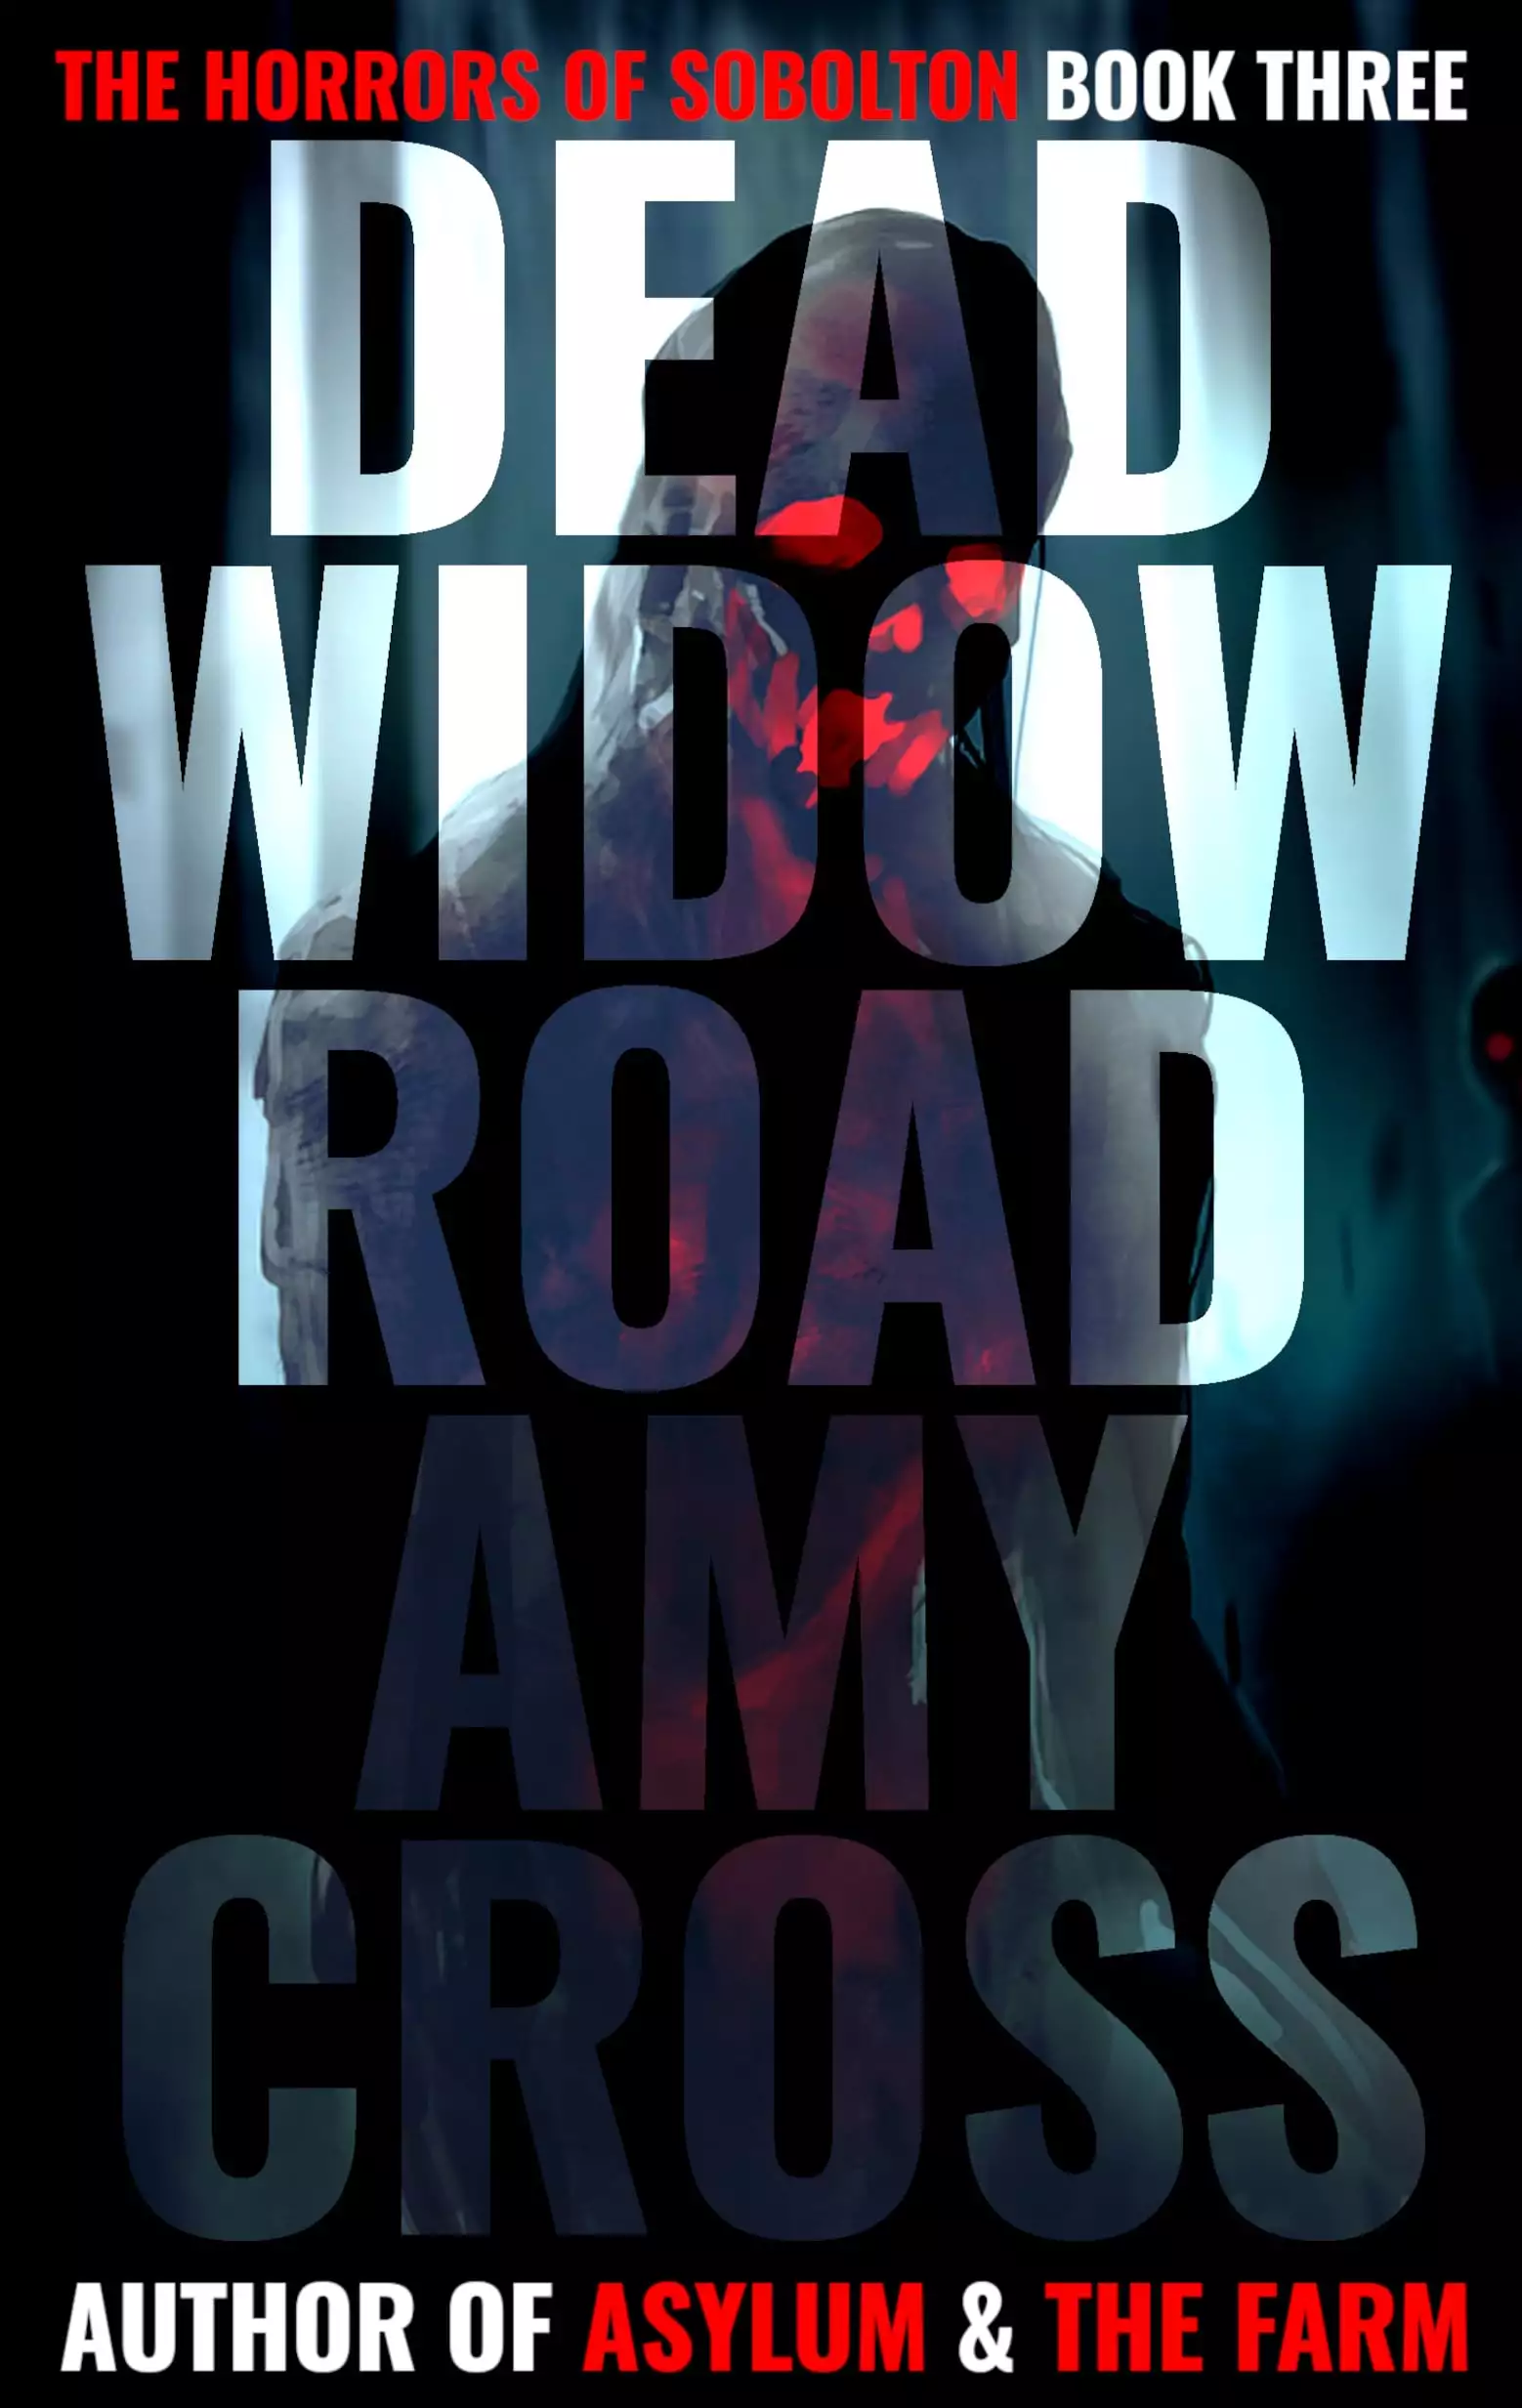 Dead Widow Road